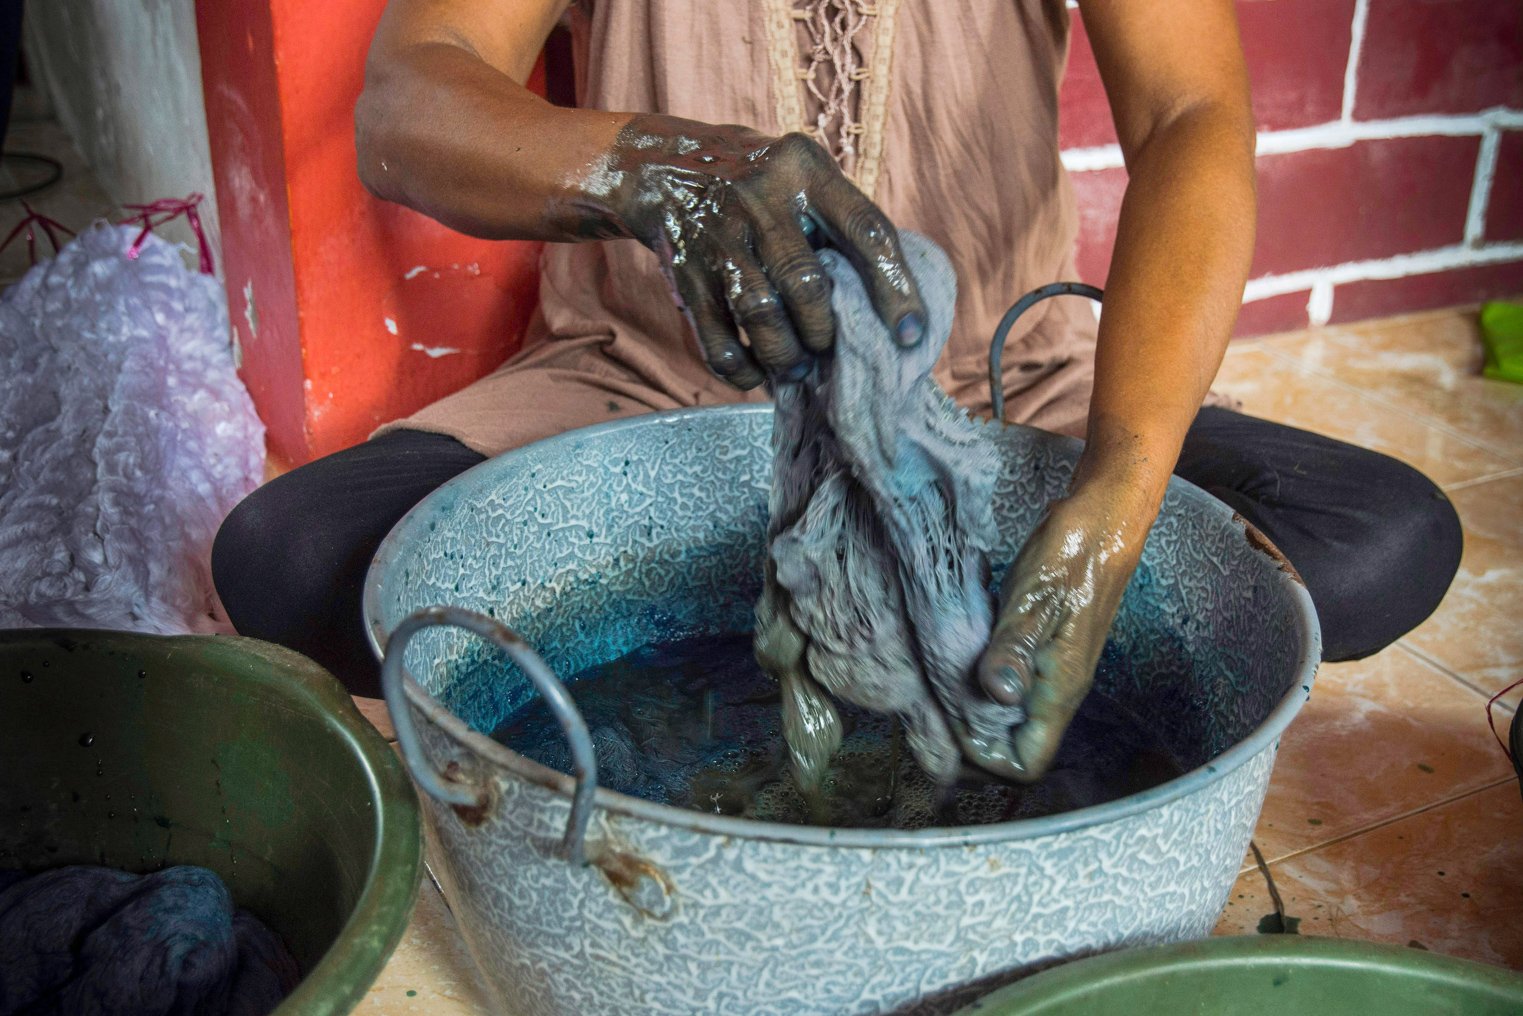 Anggota kelompok Ralsasam merendam kain ke dalam cairan pewarna berbahan dasar daun taro yang digunakan sebagai pewarna alami kain tenun ikat Tanimbar, Ambon, Maluku. ANTARA FOTO/ FB Anggoro/AW.